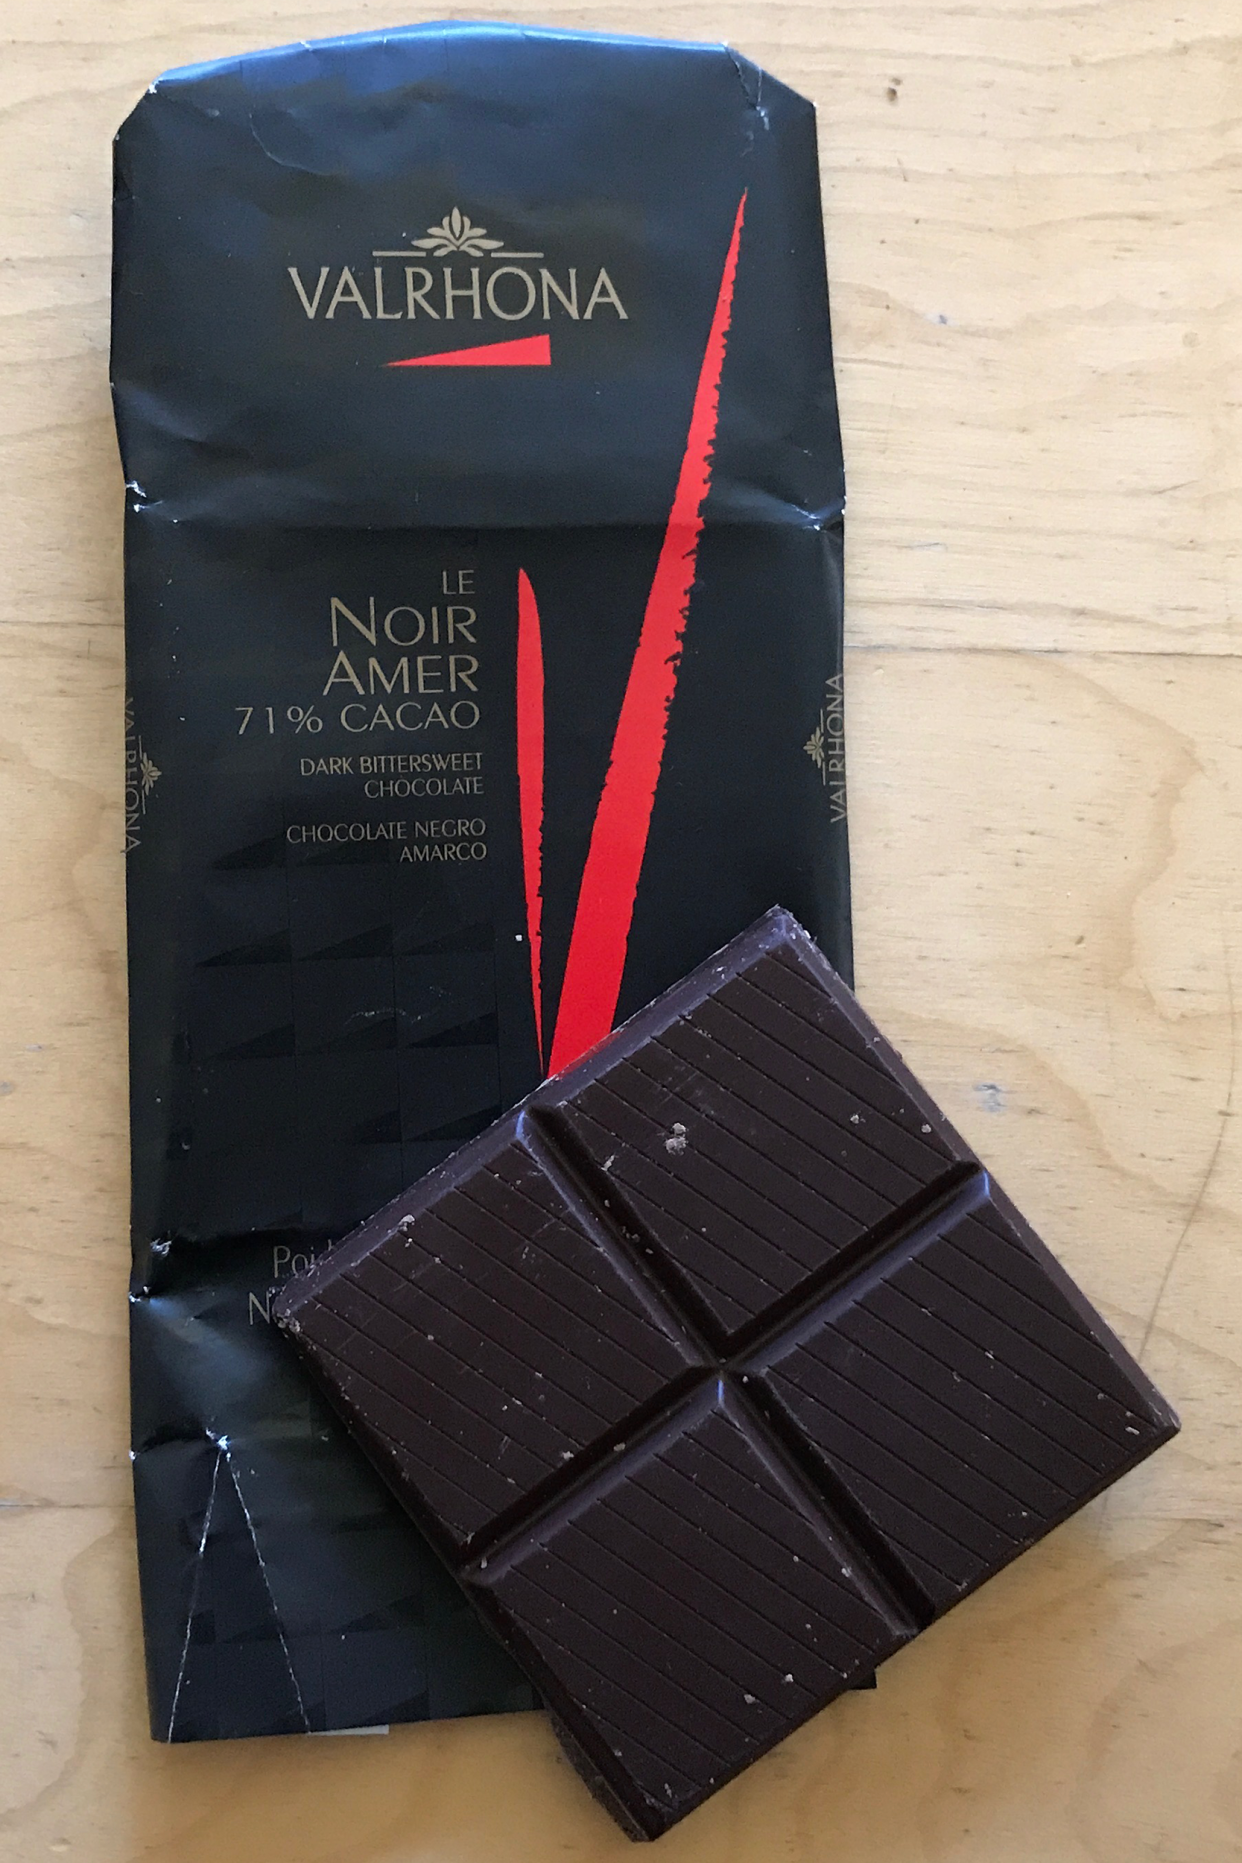 Valrhona Le Noir Amer Dark Bittersweet Chocolate